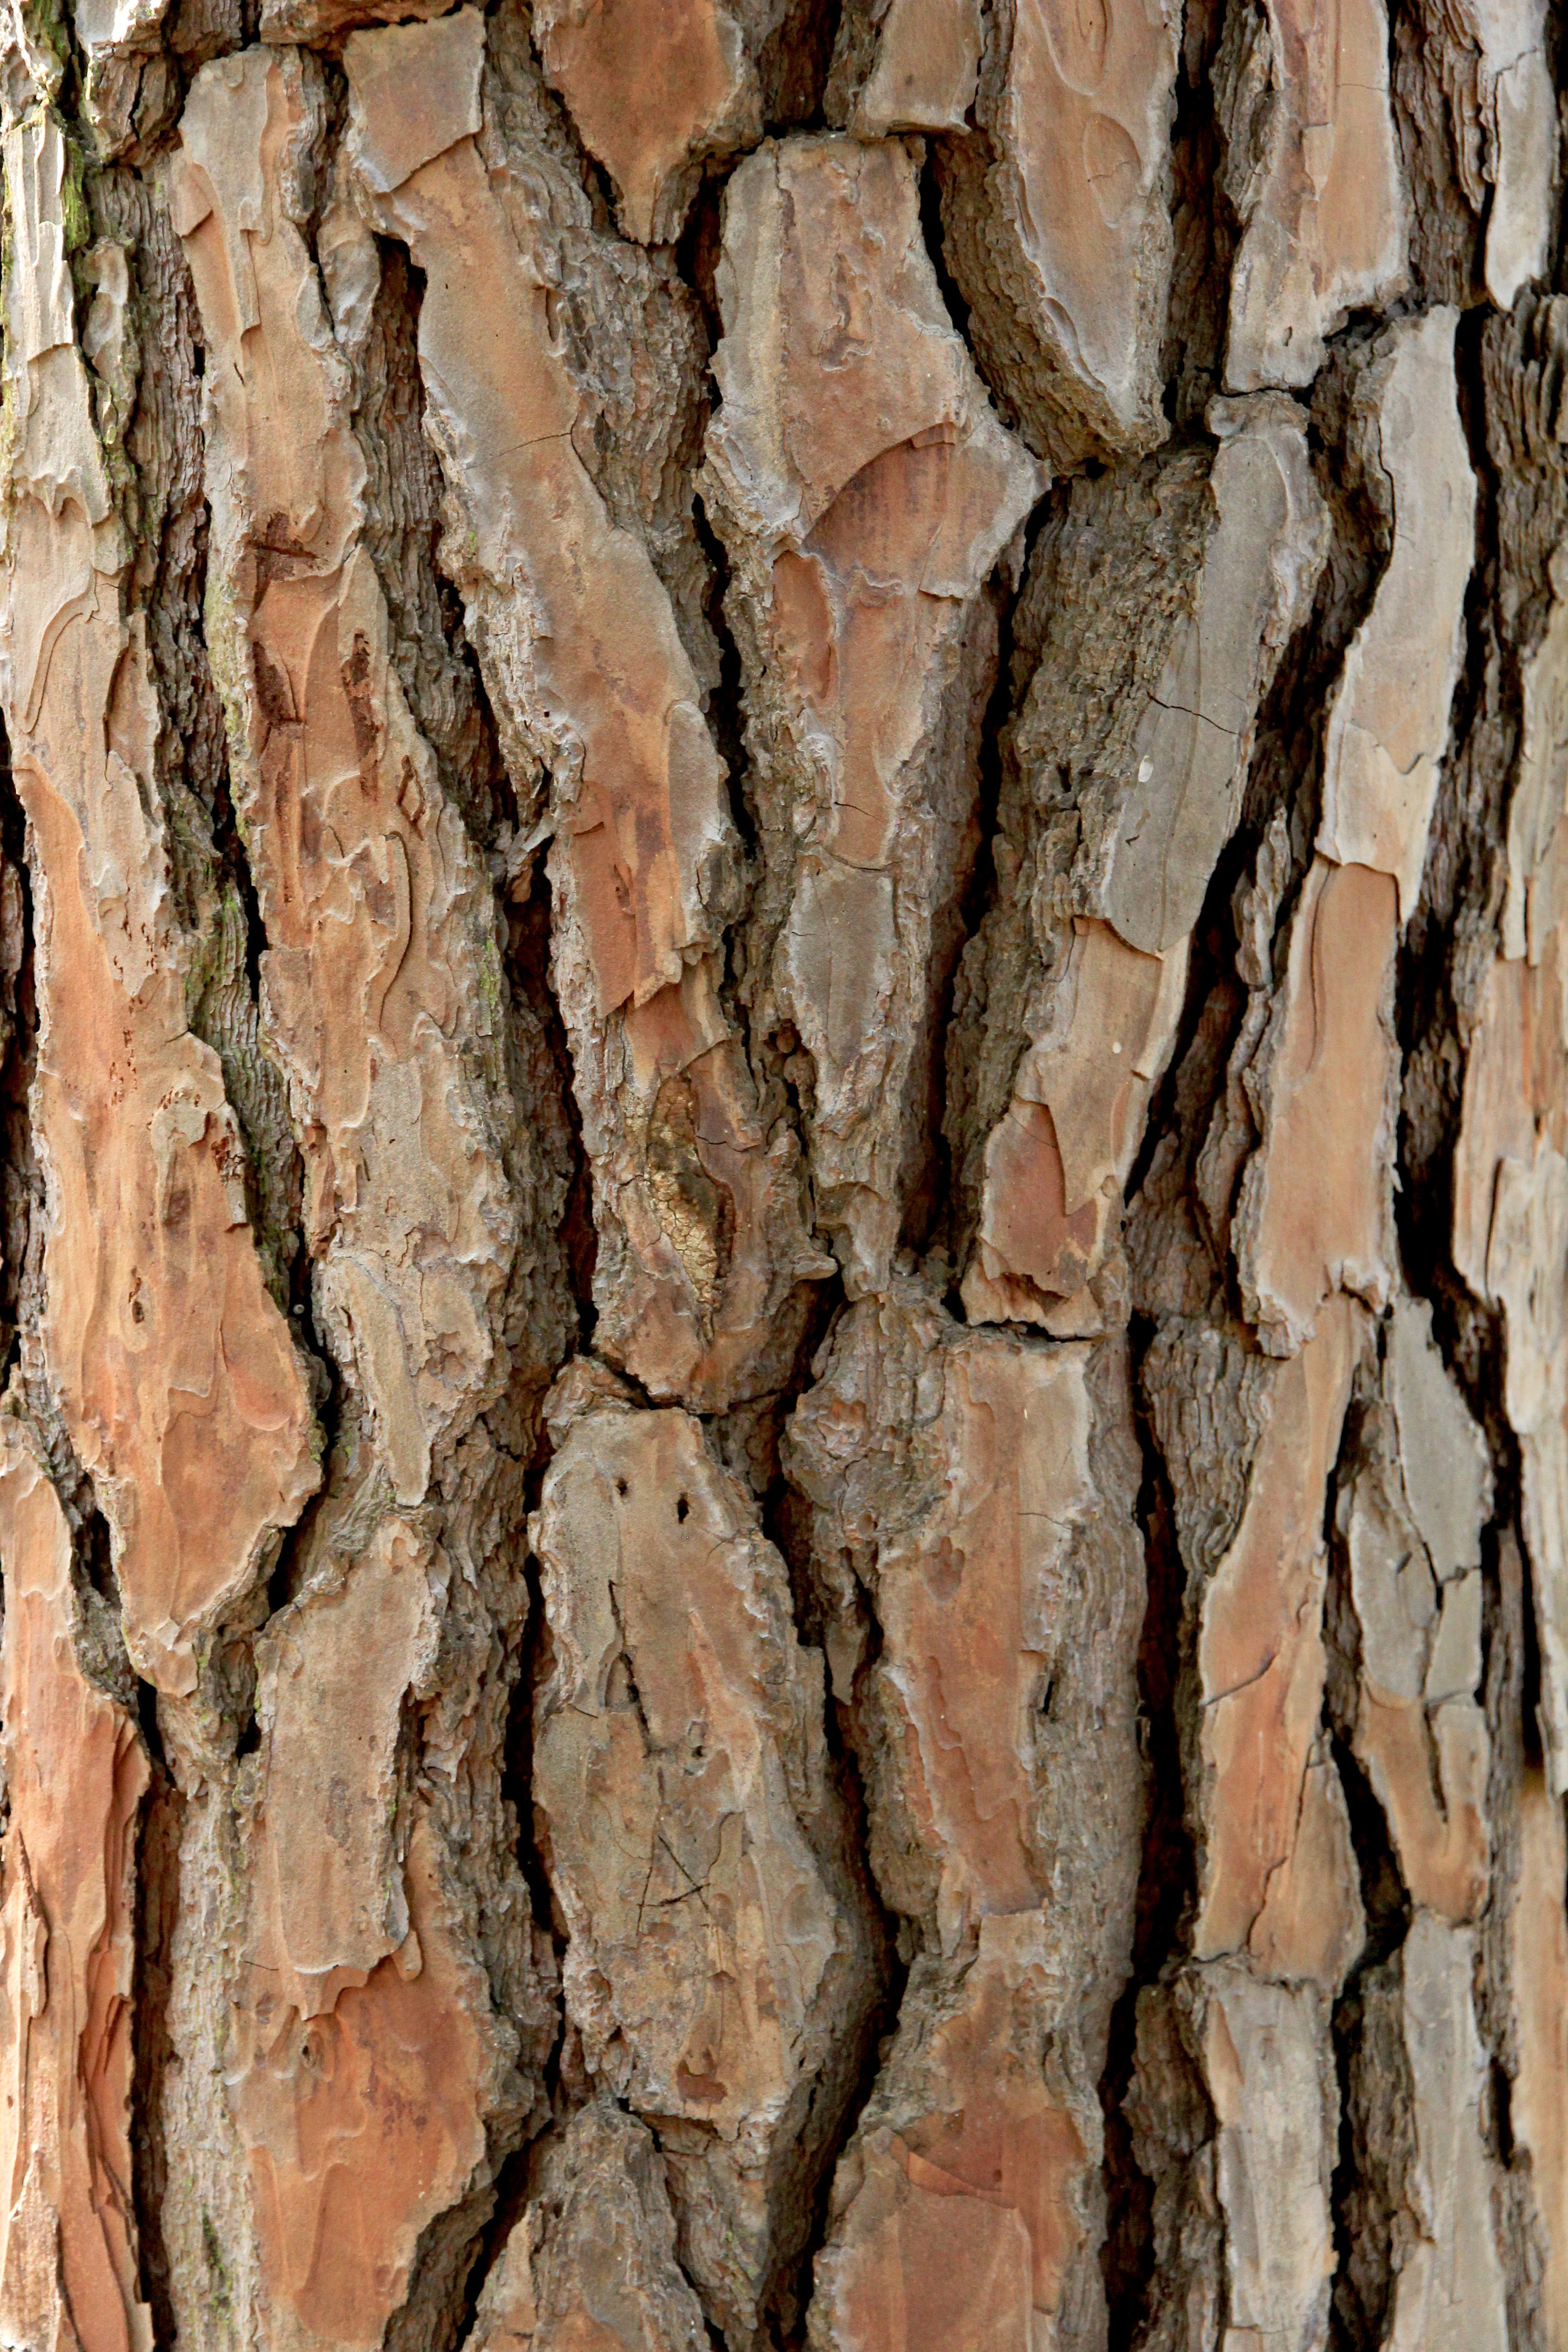 Tree Bark Texture image - Free stock photo - Public Domain photo ...